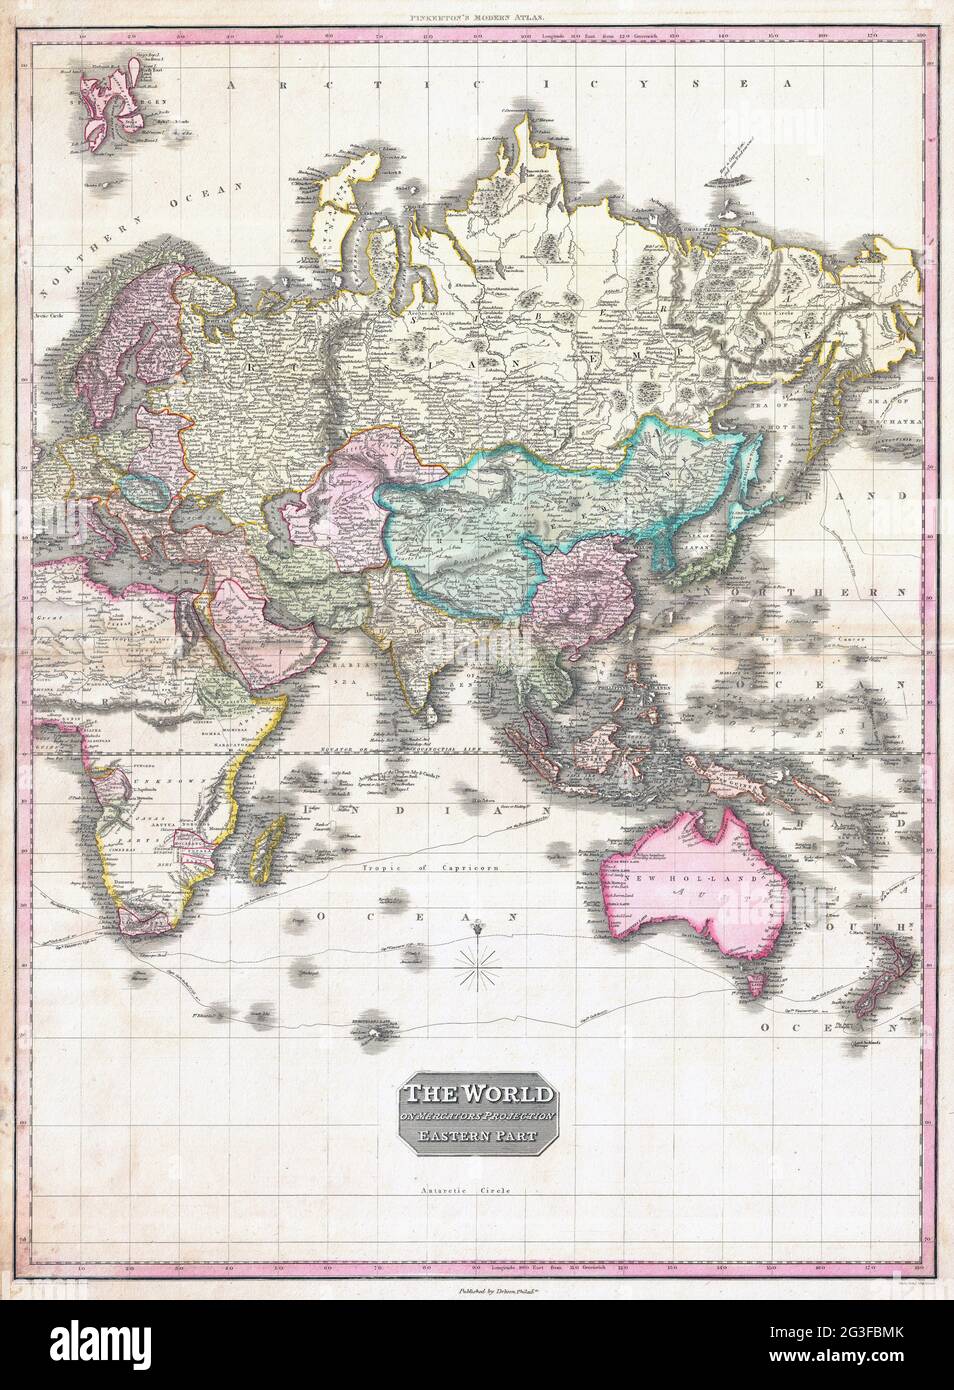 Carte du monde 1818 carte de Pinkerton de l'hémisphère oriental (Asie, Afrique, Europe, Australie) – Geographicus. Banque D'Images